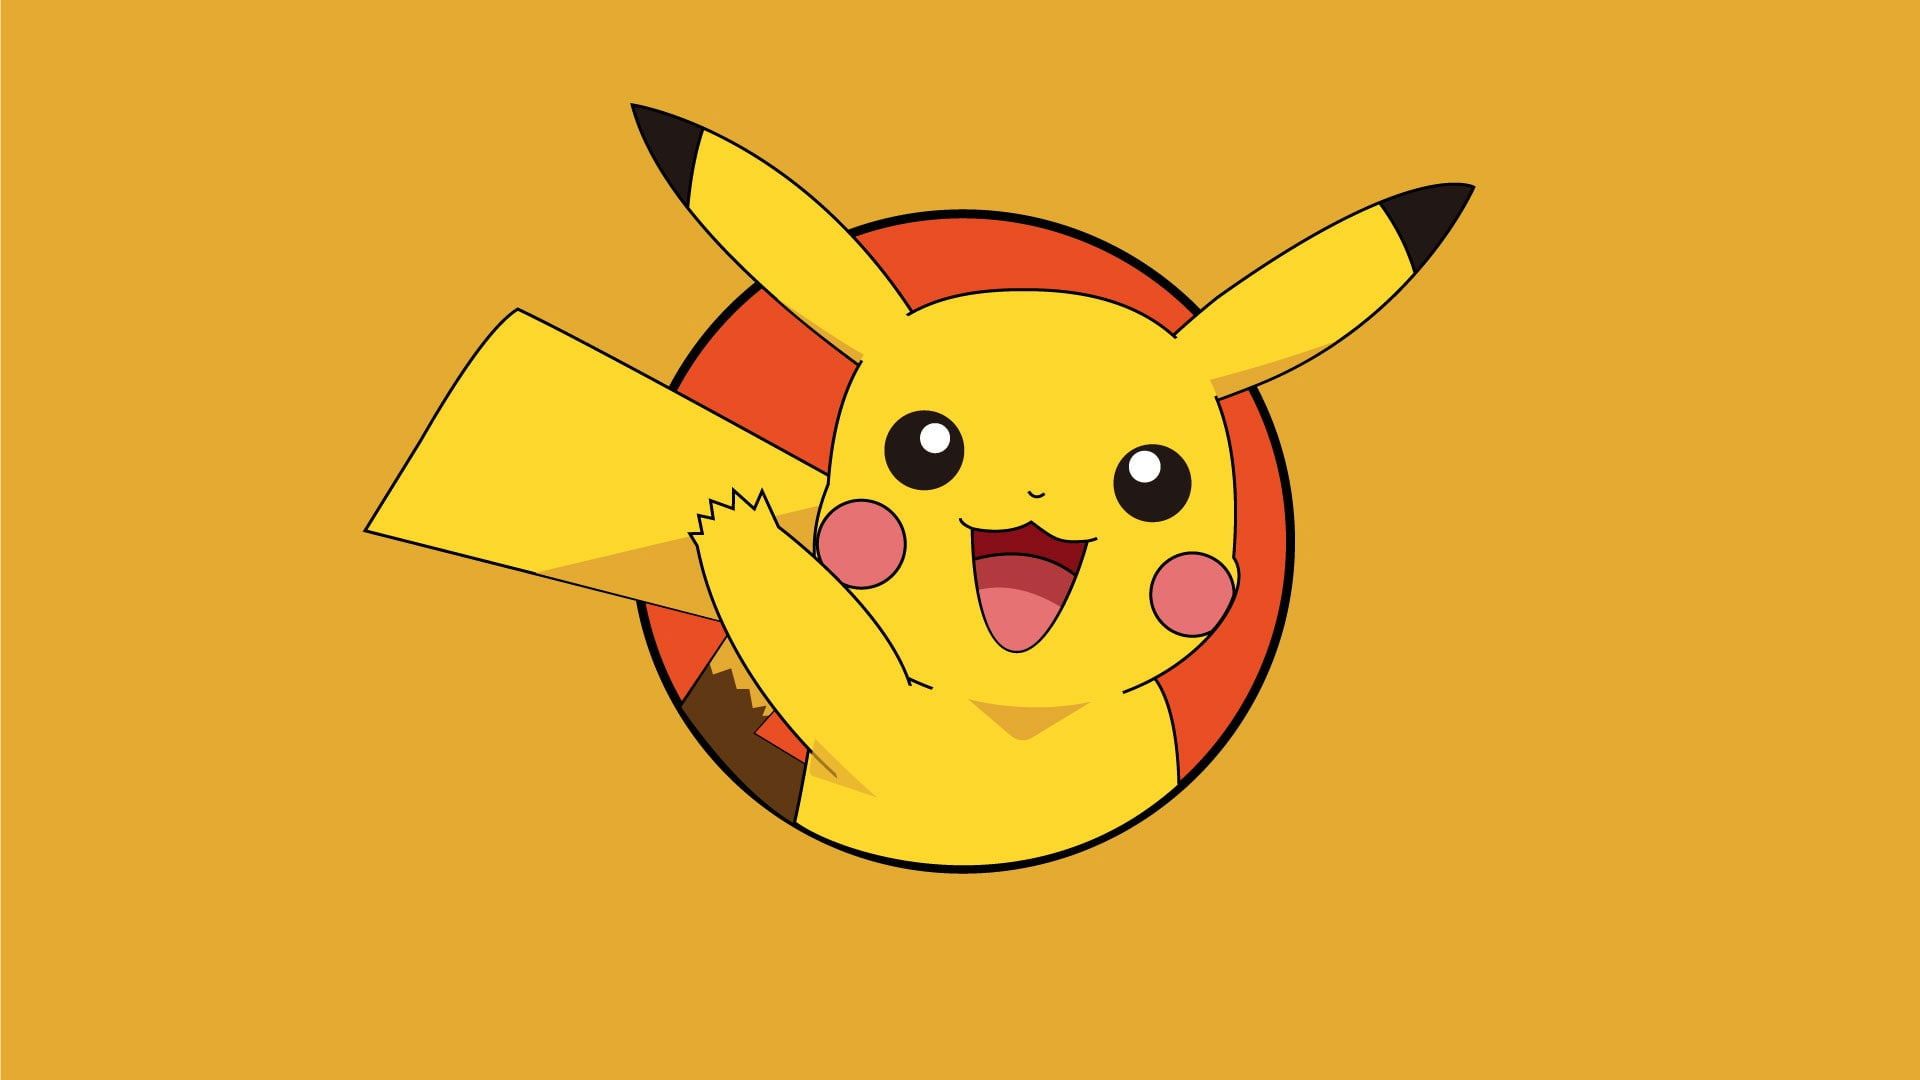 A pikachu pokemon wallpaper - Pikachu